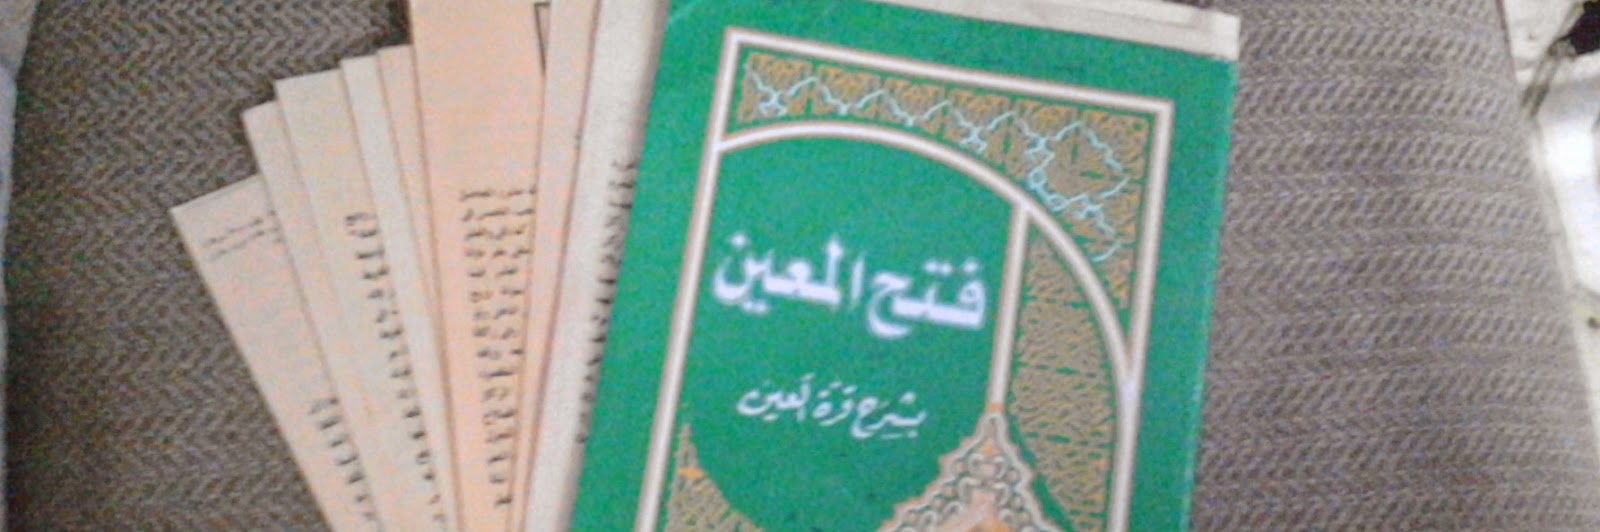 Kitab Fathul Mu'in, Syarat Menjadi Kiyai Dalam Bidang Fiqih